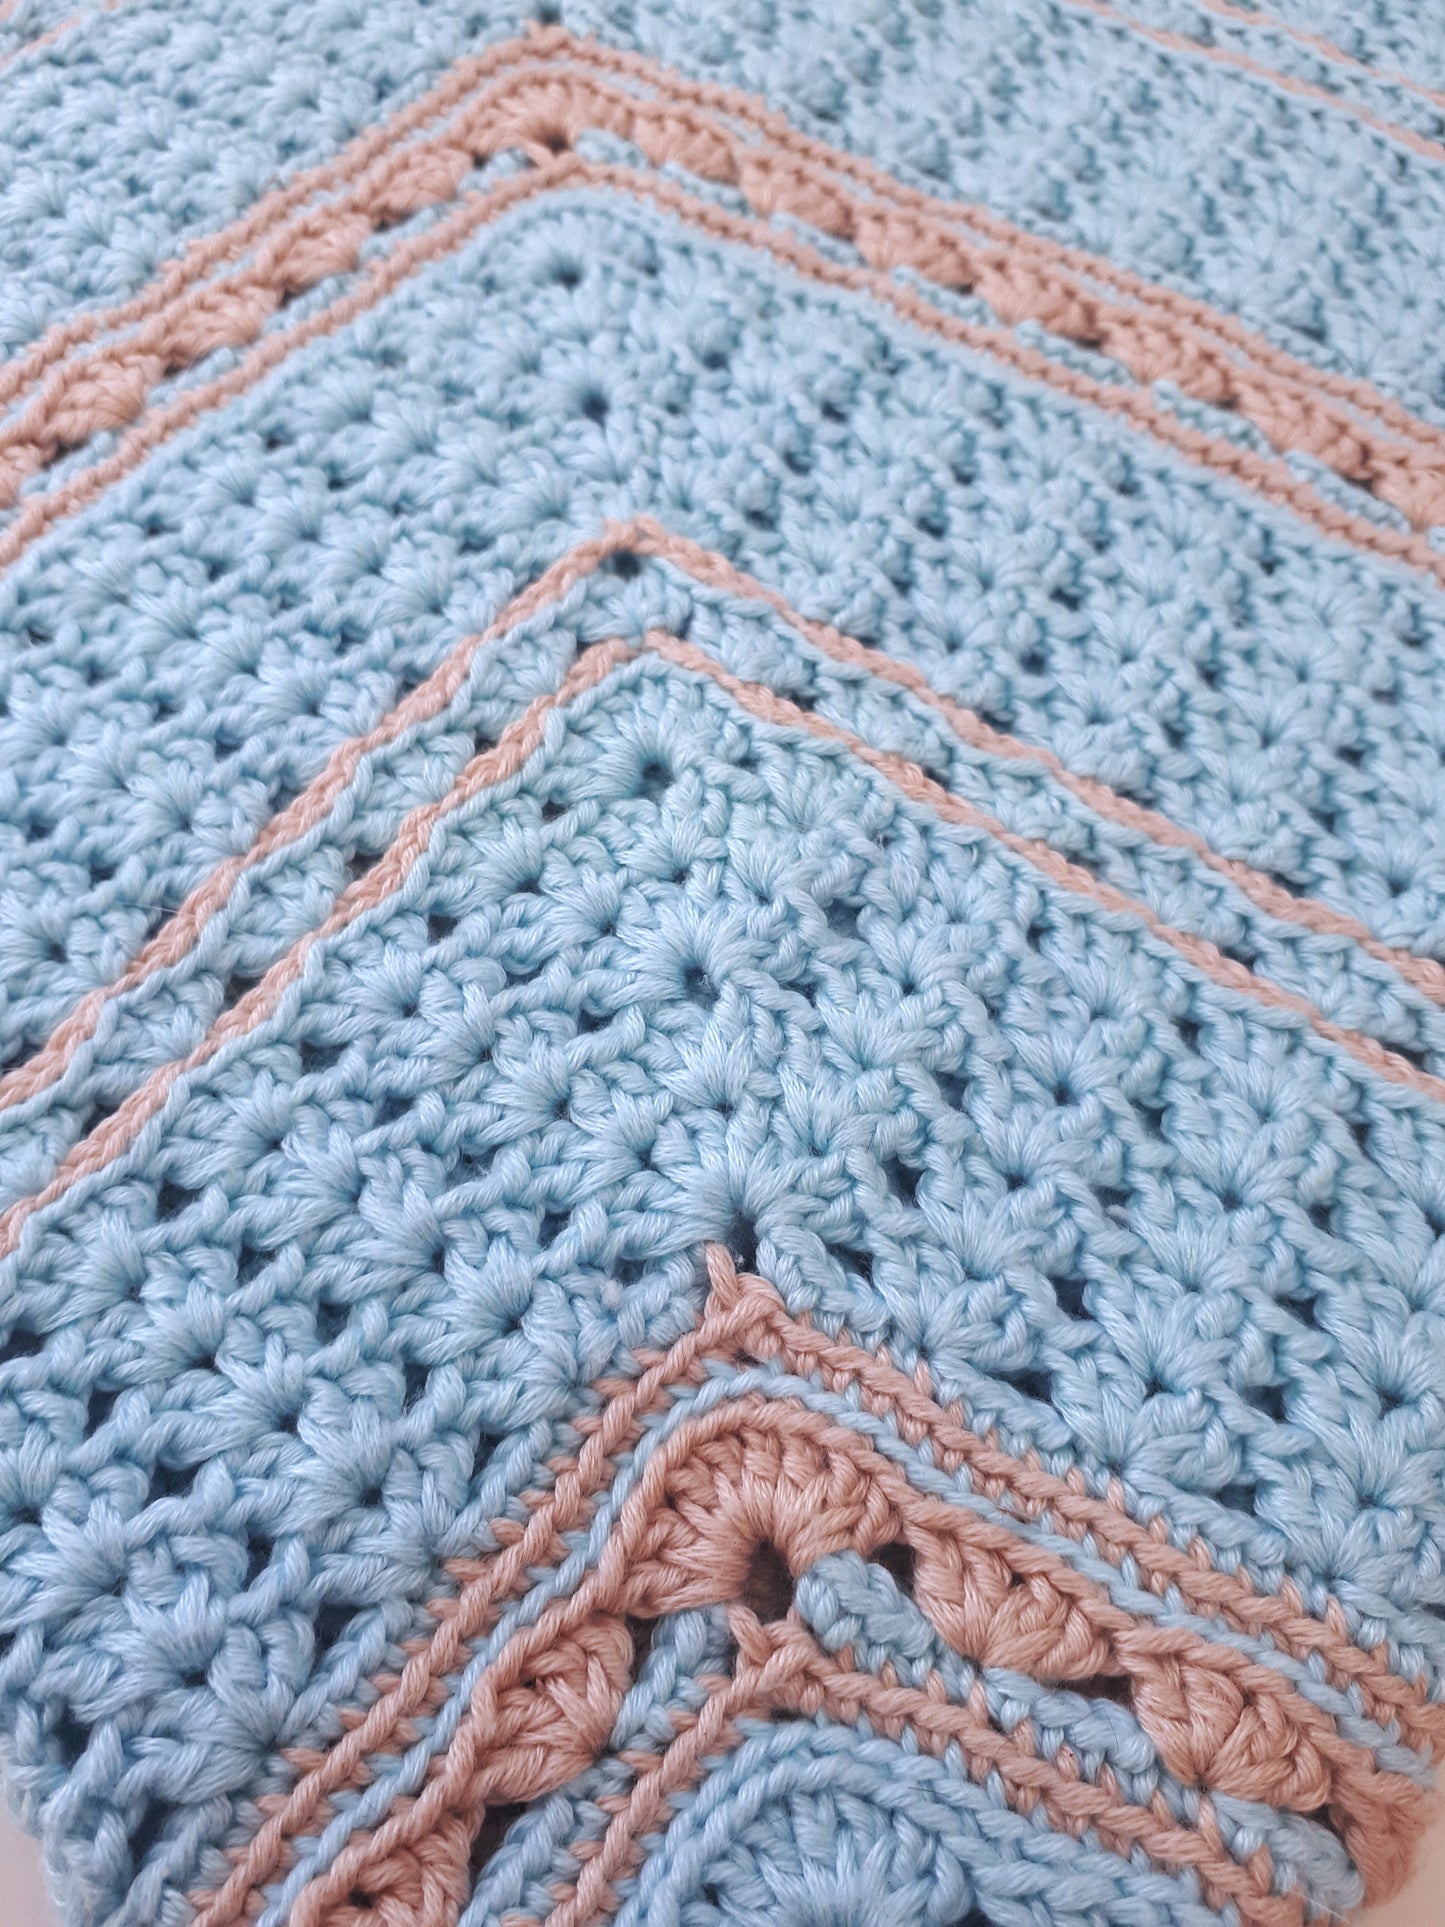 Ella's Lullaby Blanket Crochet Pattern by Agat Rottman